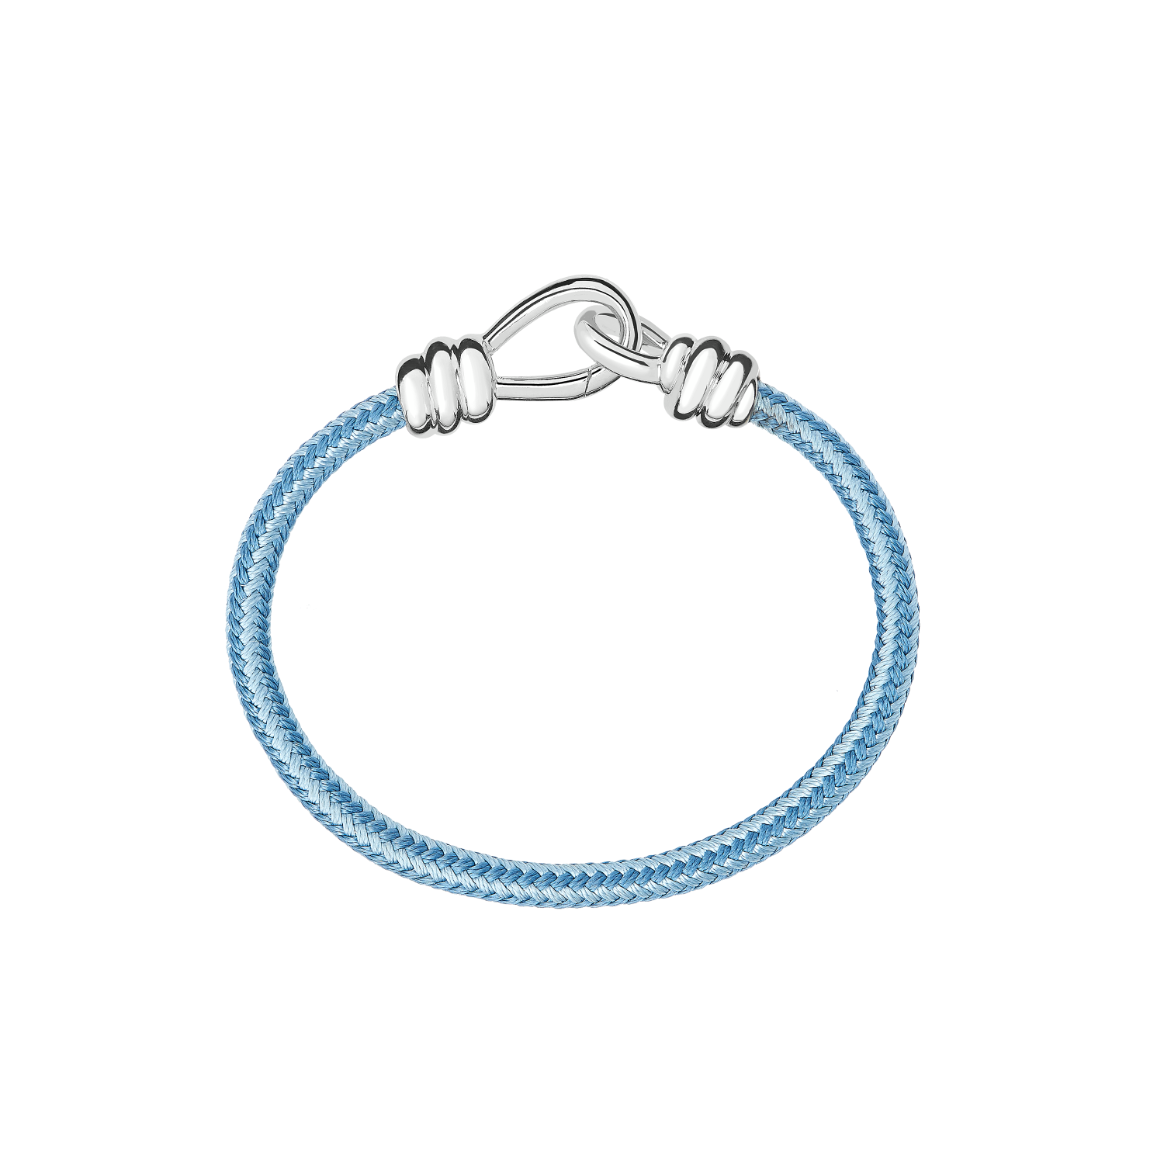 DBC2001_KNOT0_CAZAG_010_Dodo_nodo-bracelet-closure-925-silver-thick-cord-blue-light-blue-cotton.png